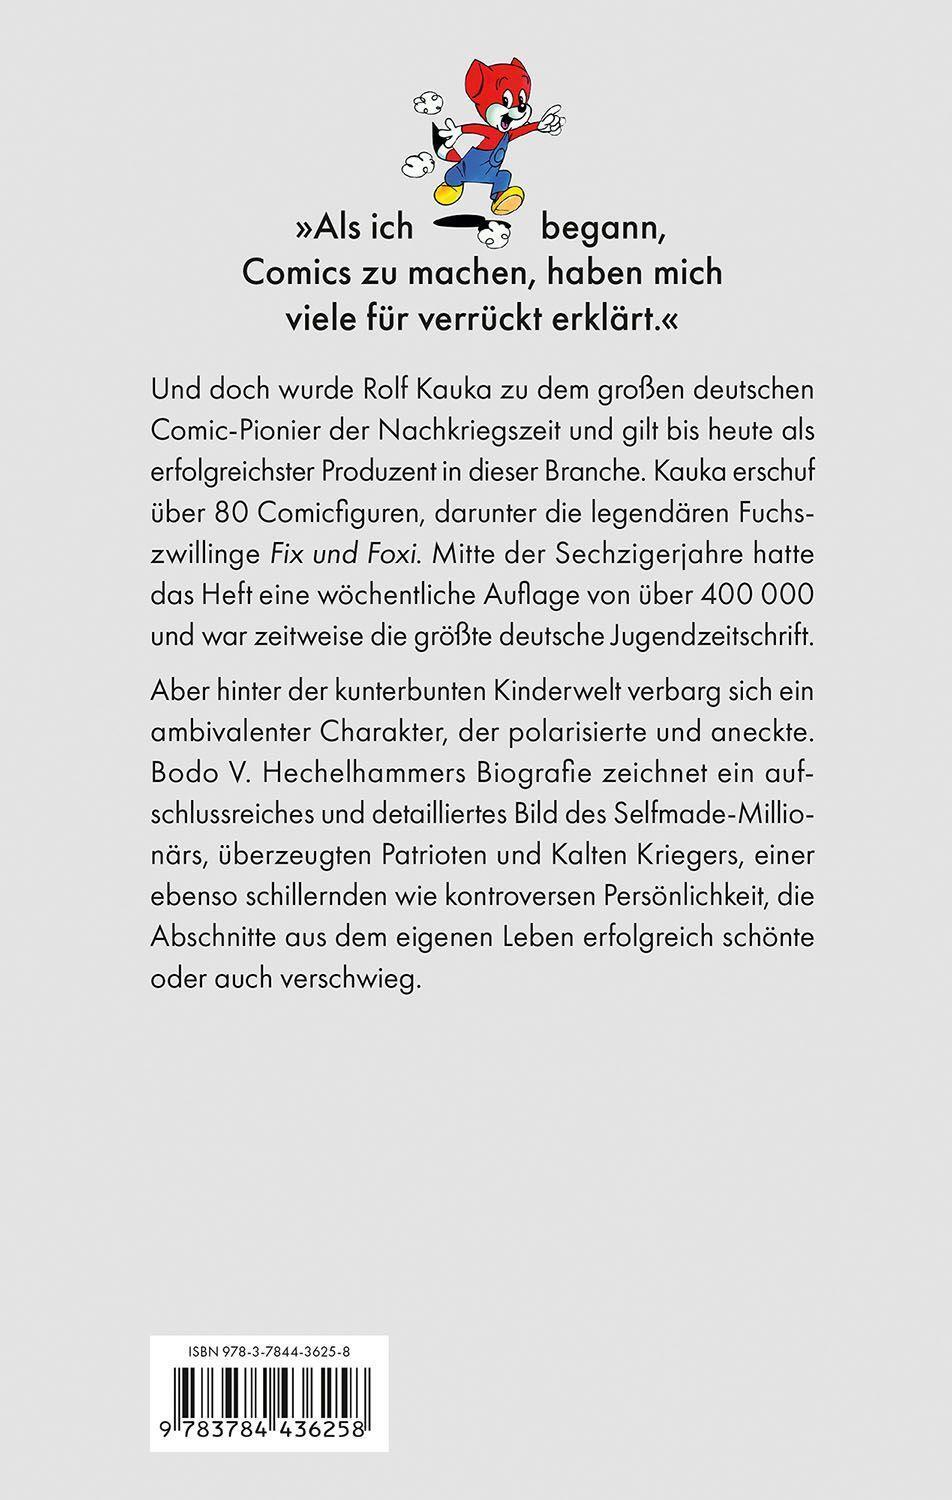 Bild: 9783784436258 | Fürst der Füchse | Das Leben des Rolf Kauka | Bodo V. Hechelhammer